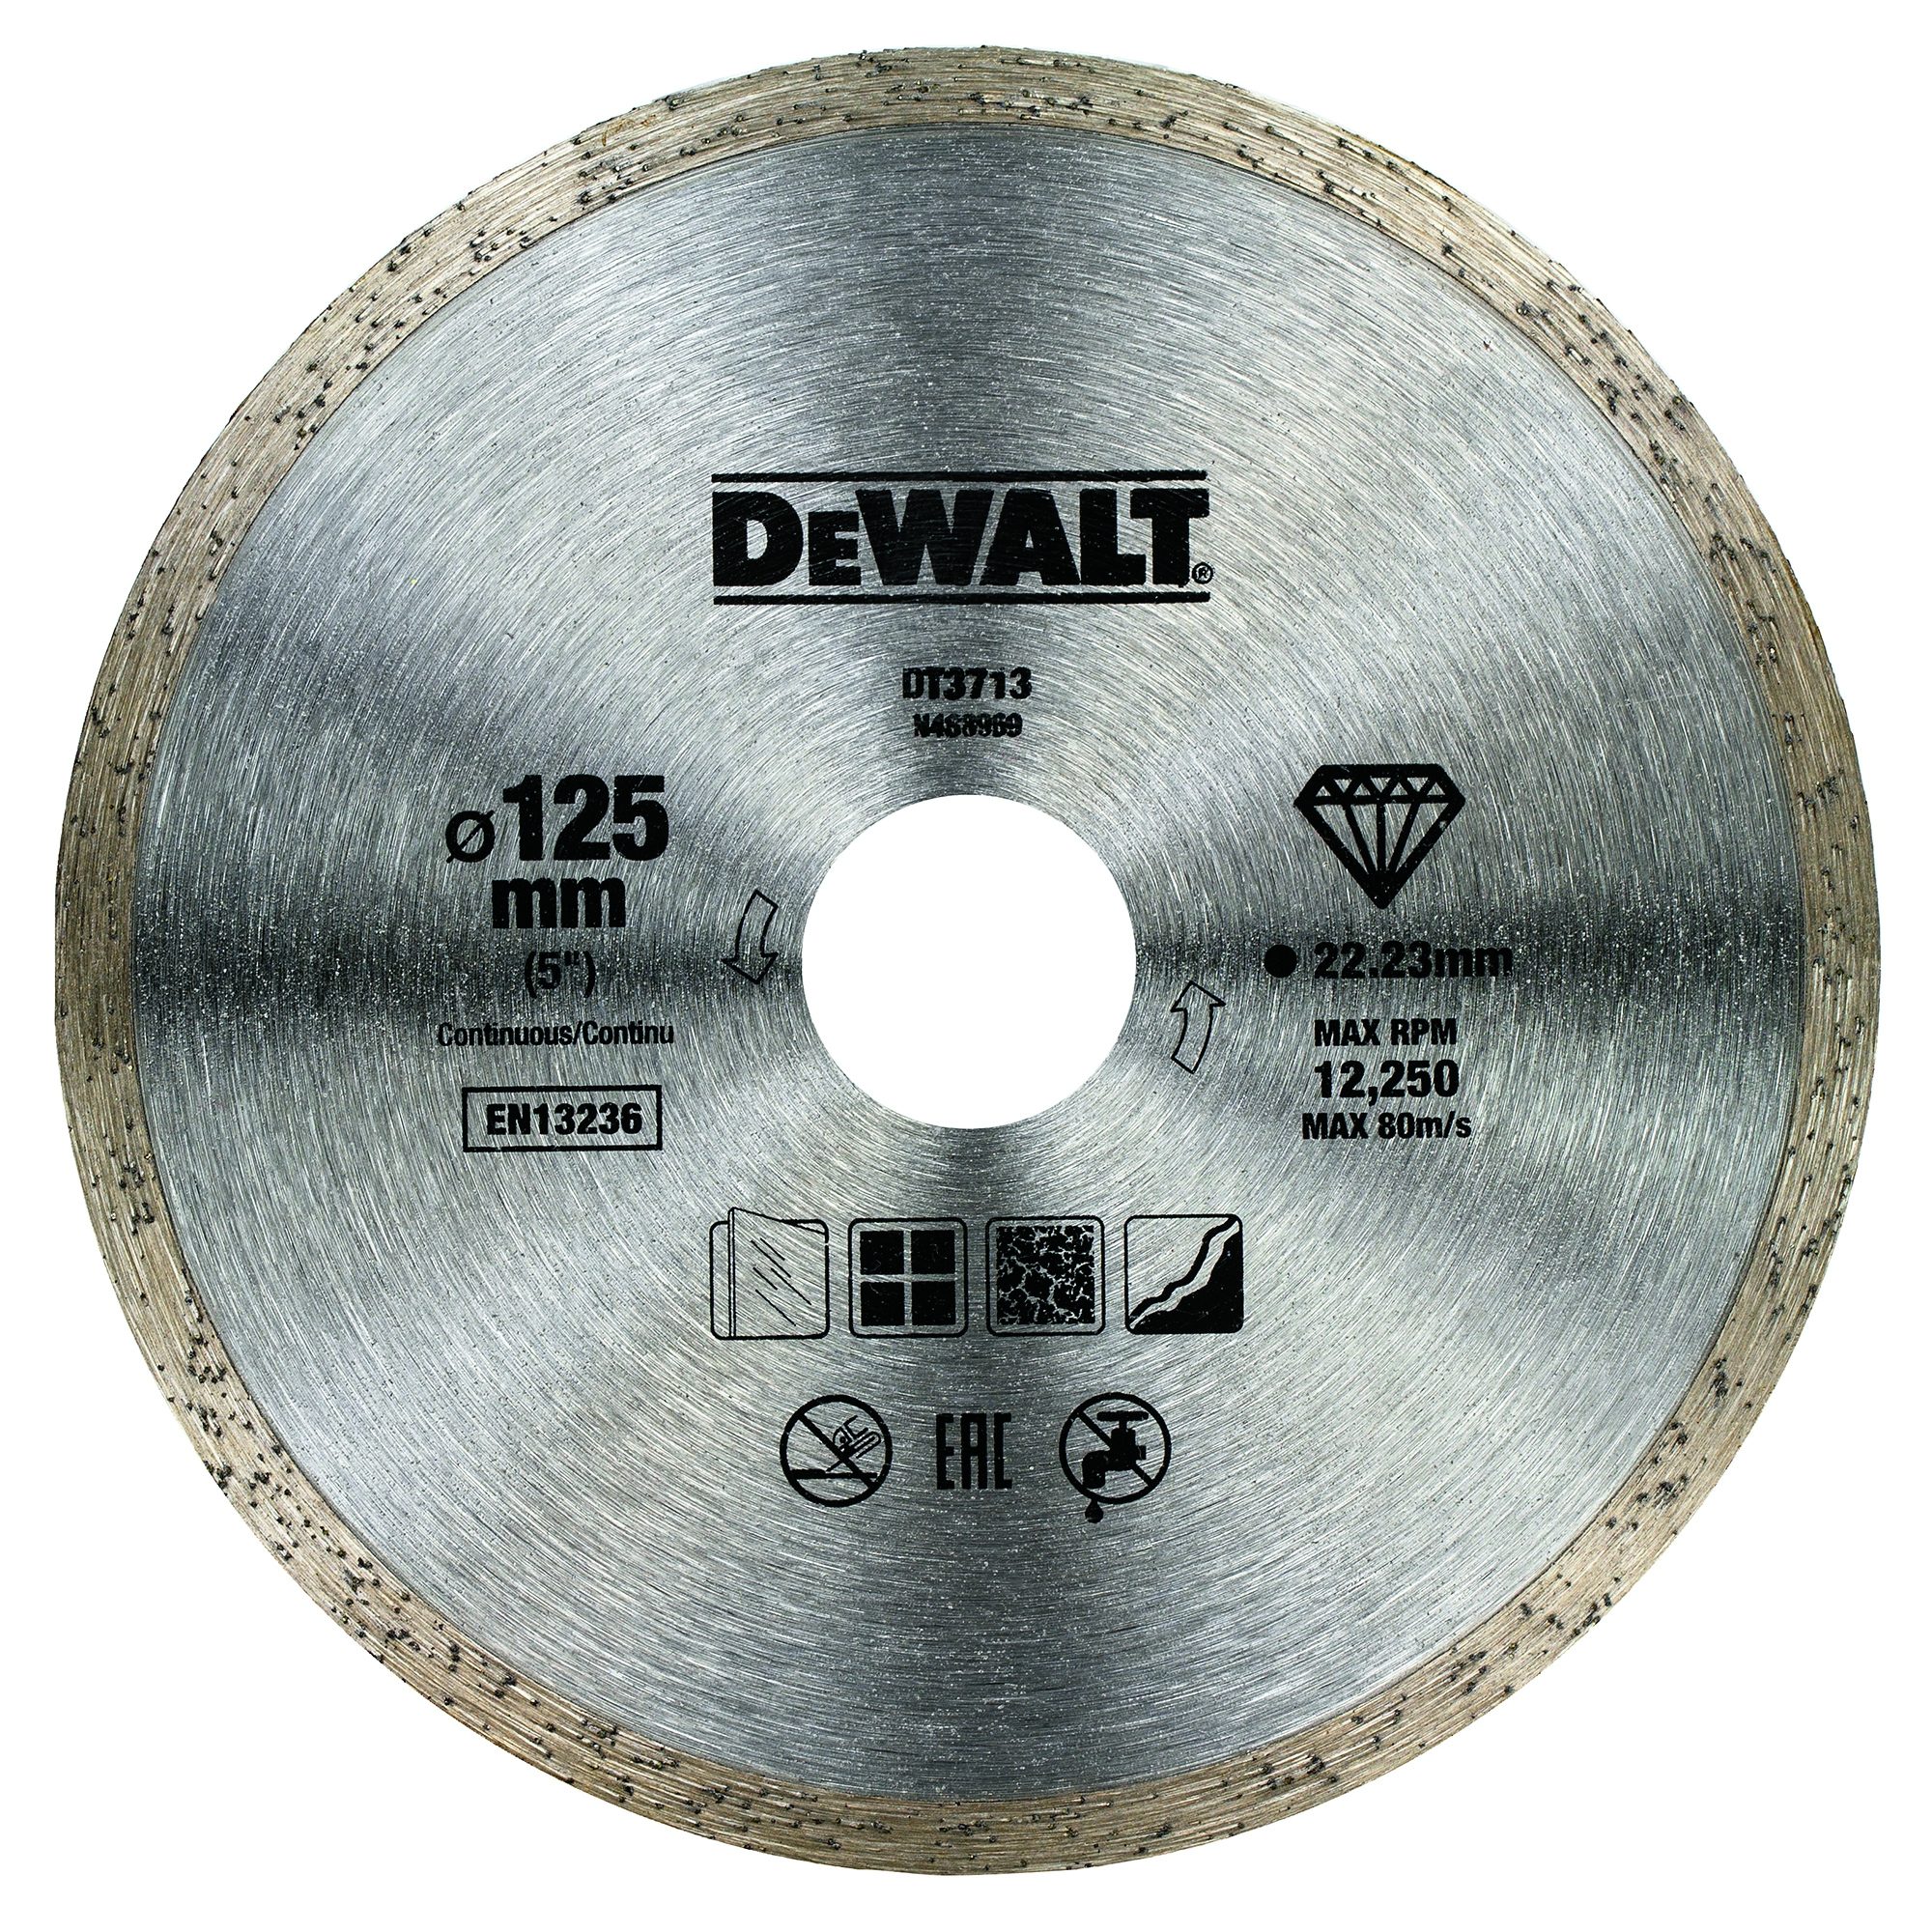 Dewalt DT3713-QZ,  Diamanttrennscheibe Eco4 125mm, Professional Economy Diamanttrennscheibe - Fliesen 125mm Ø